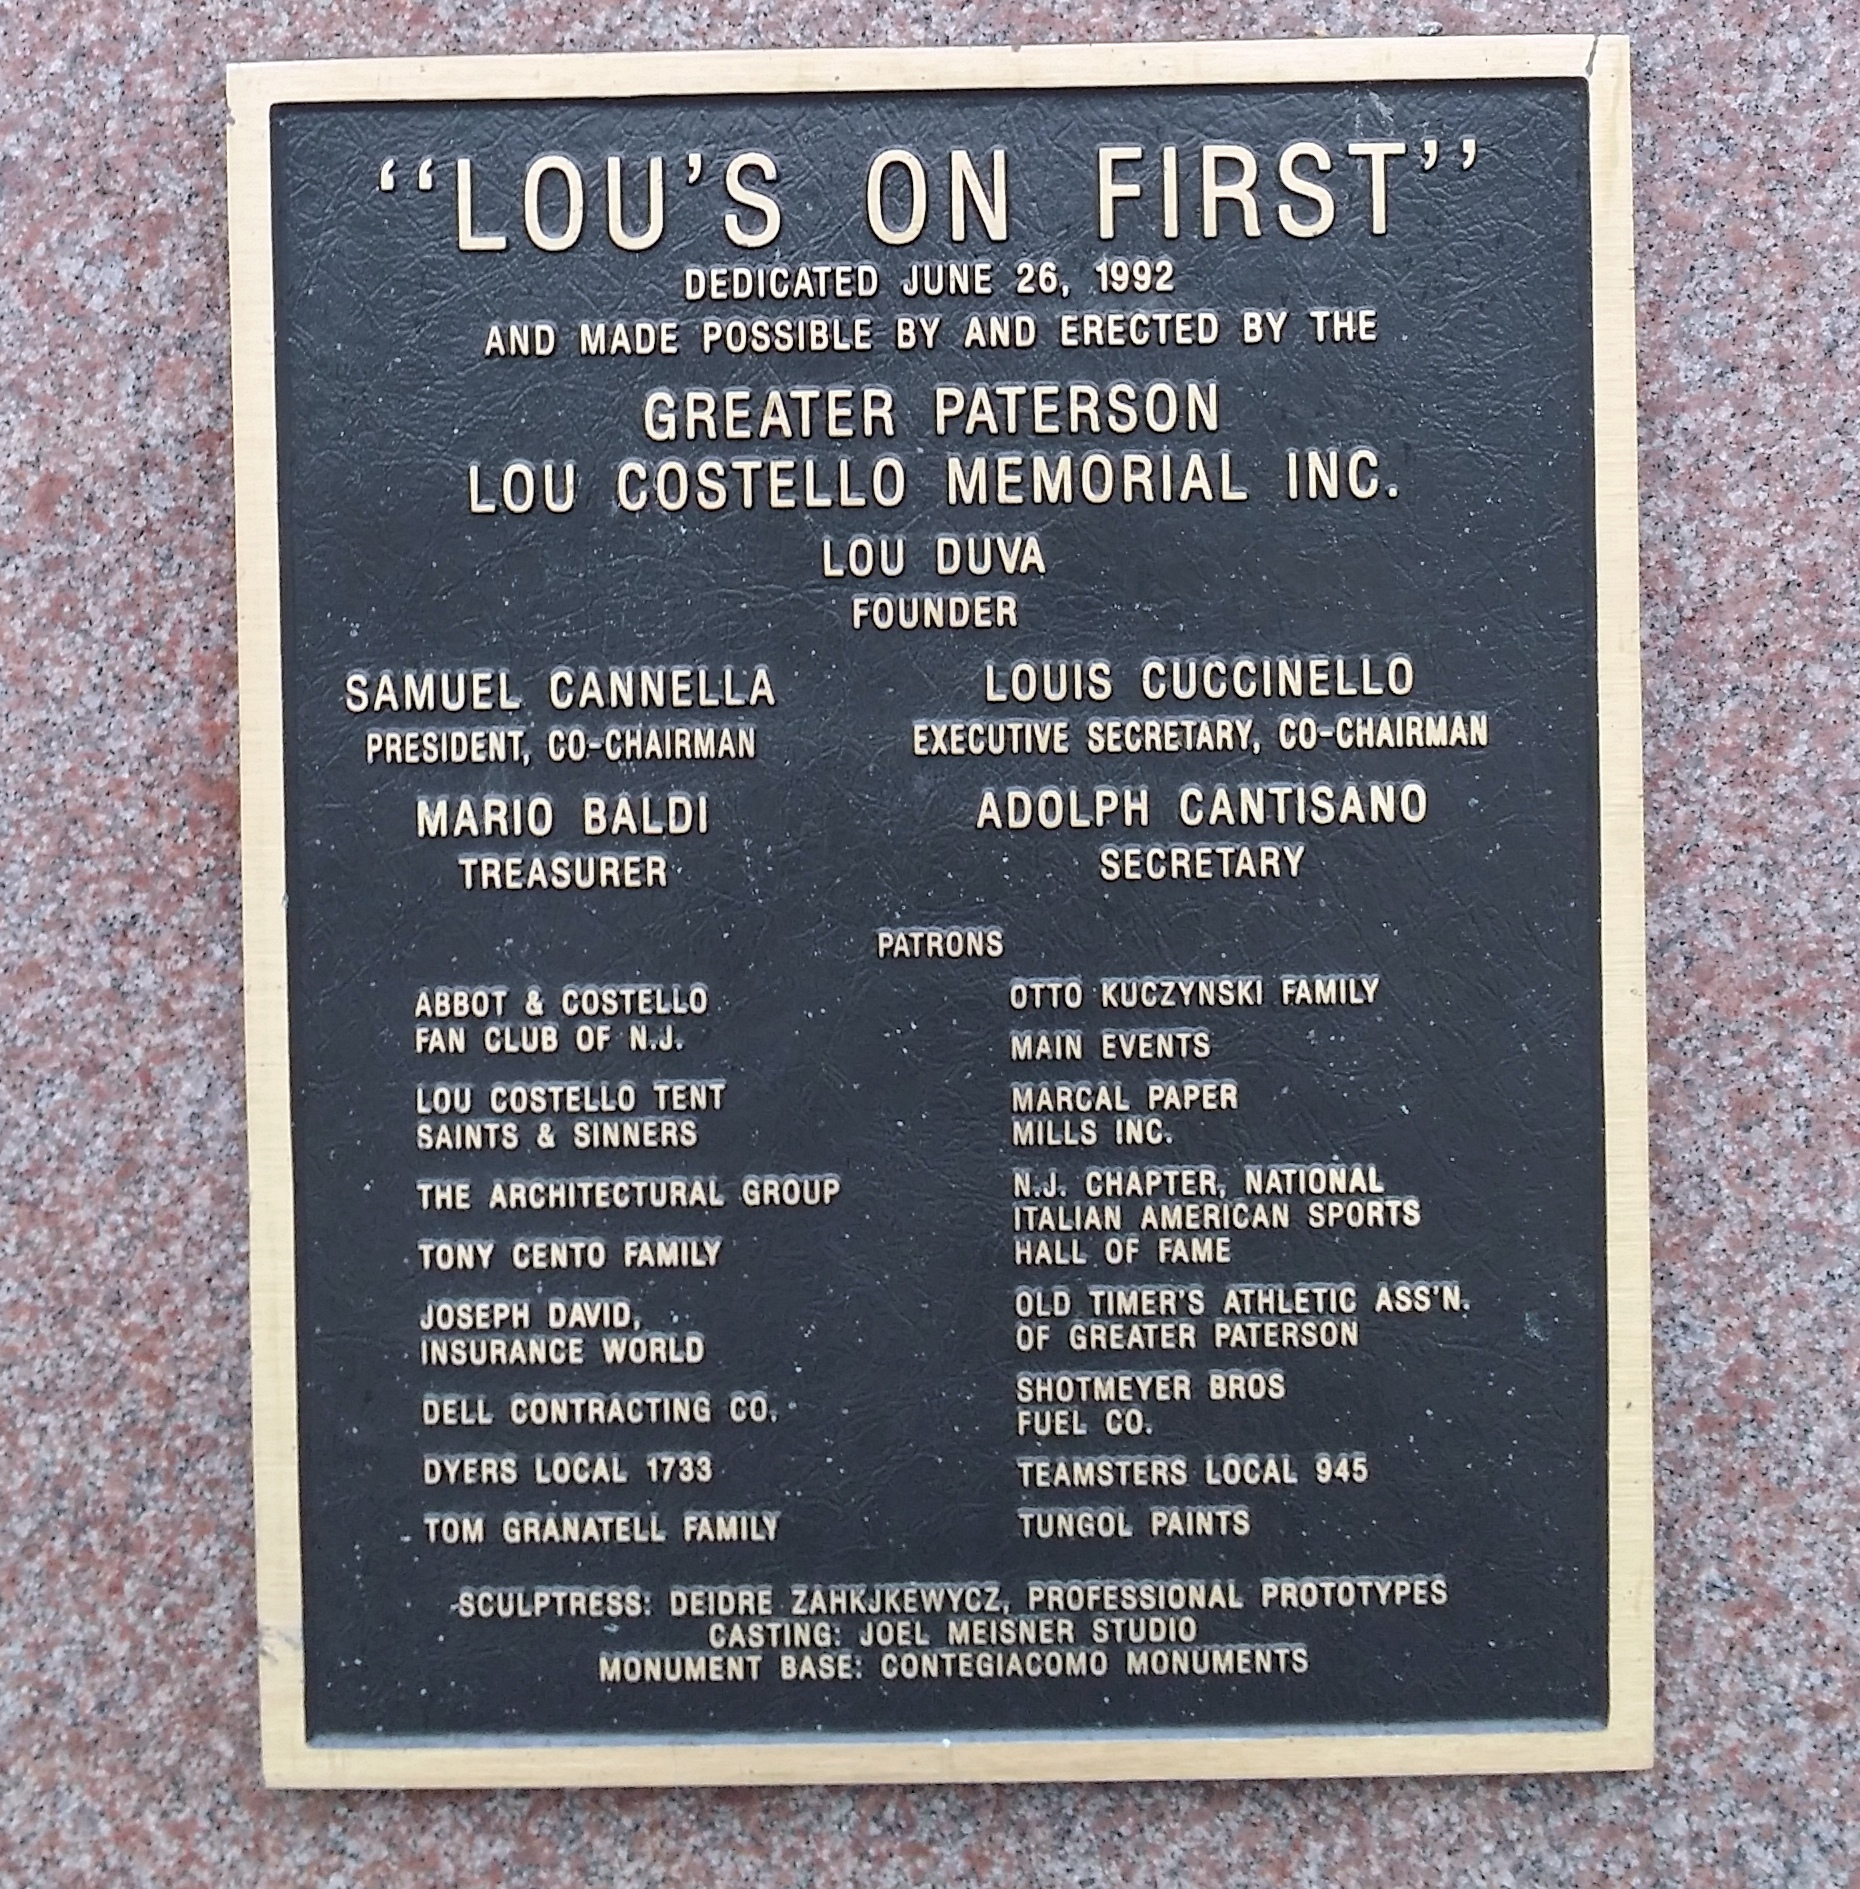 Lou Costello Statue foundation members (PHOTO BY ALEX RINALDI)